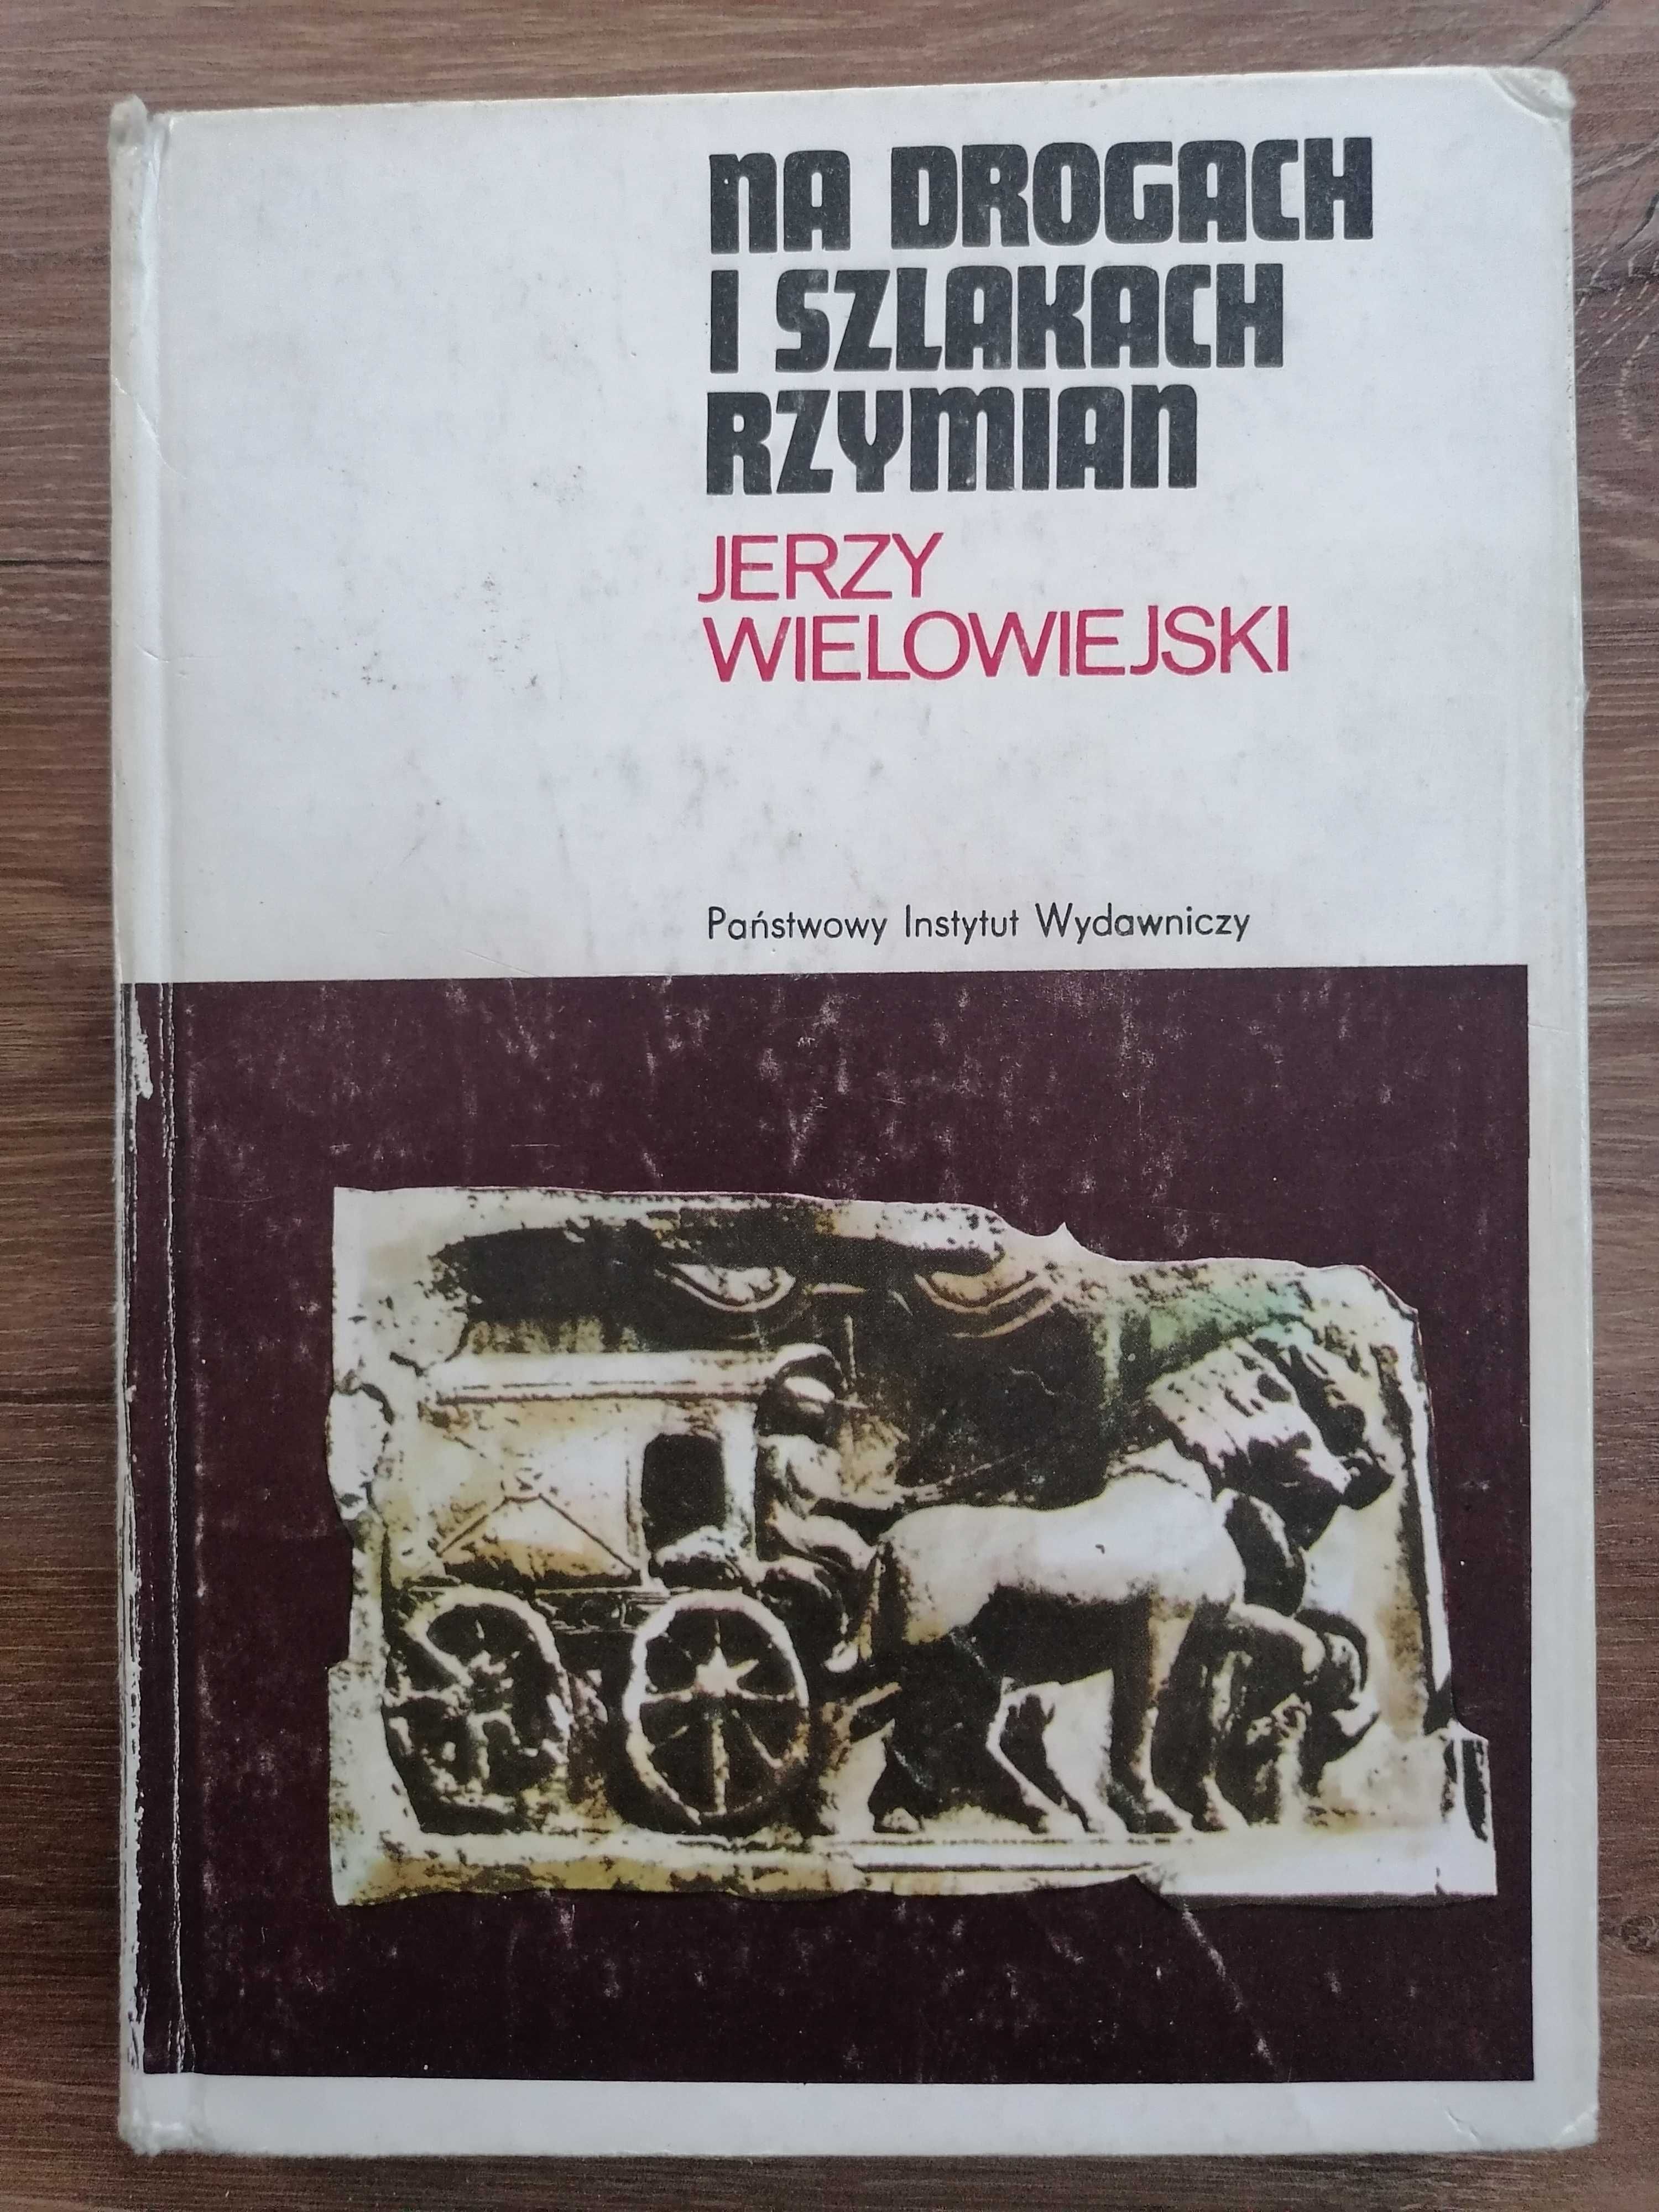 Jerzy Wielowiejski - "Na drogach i szlakach Rzymian"